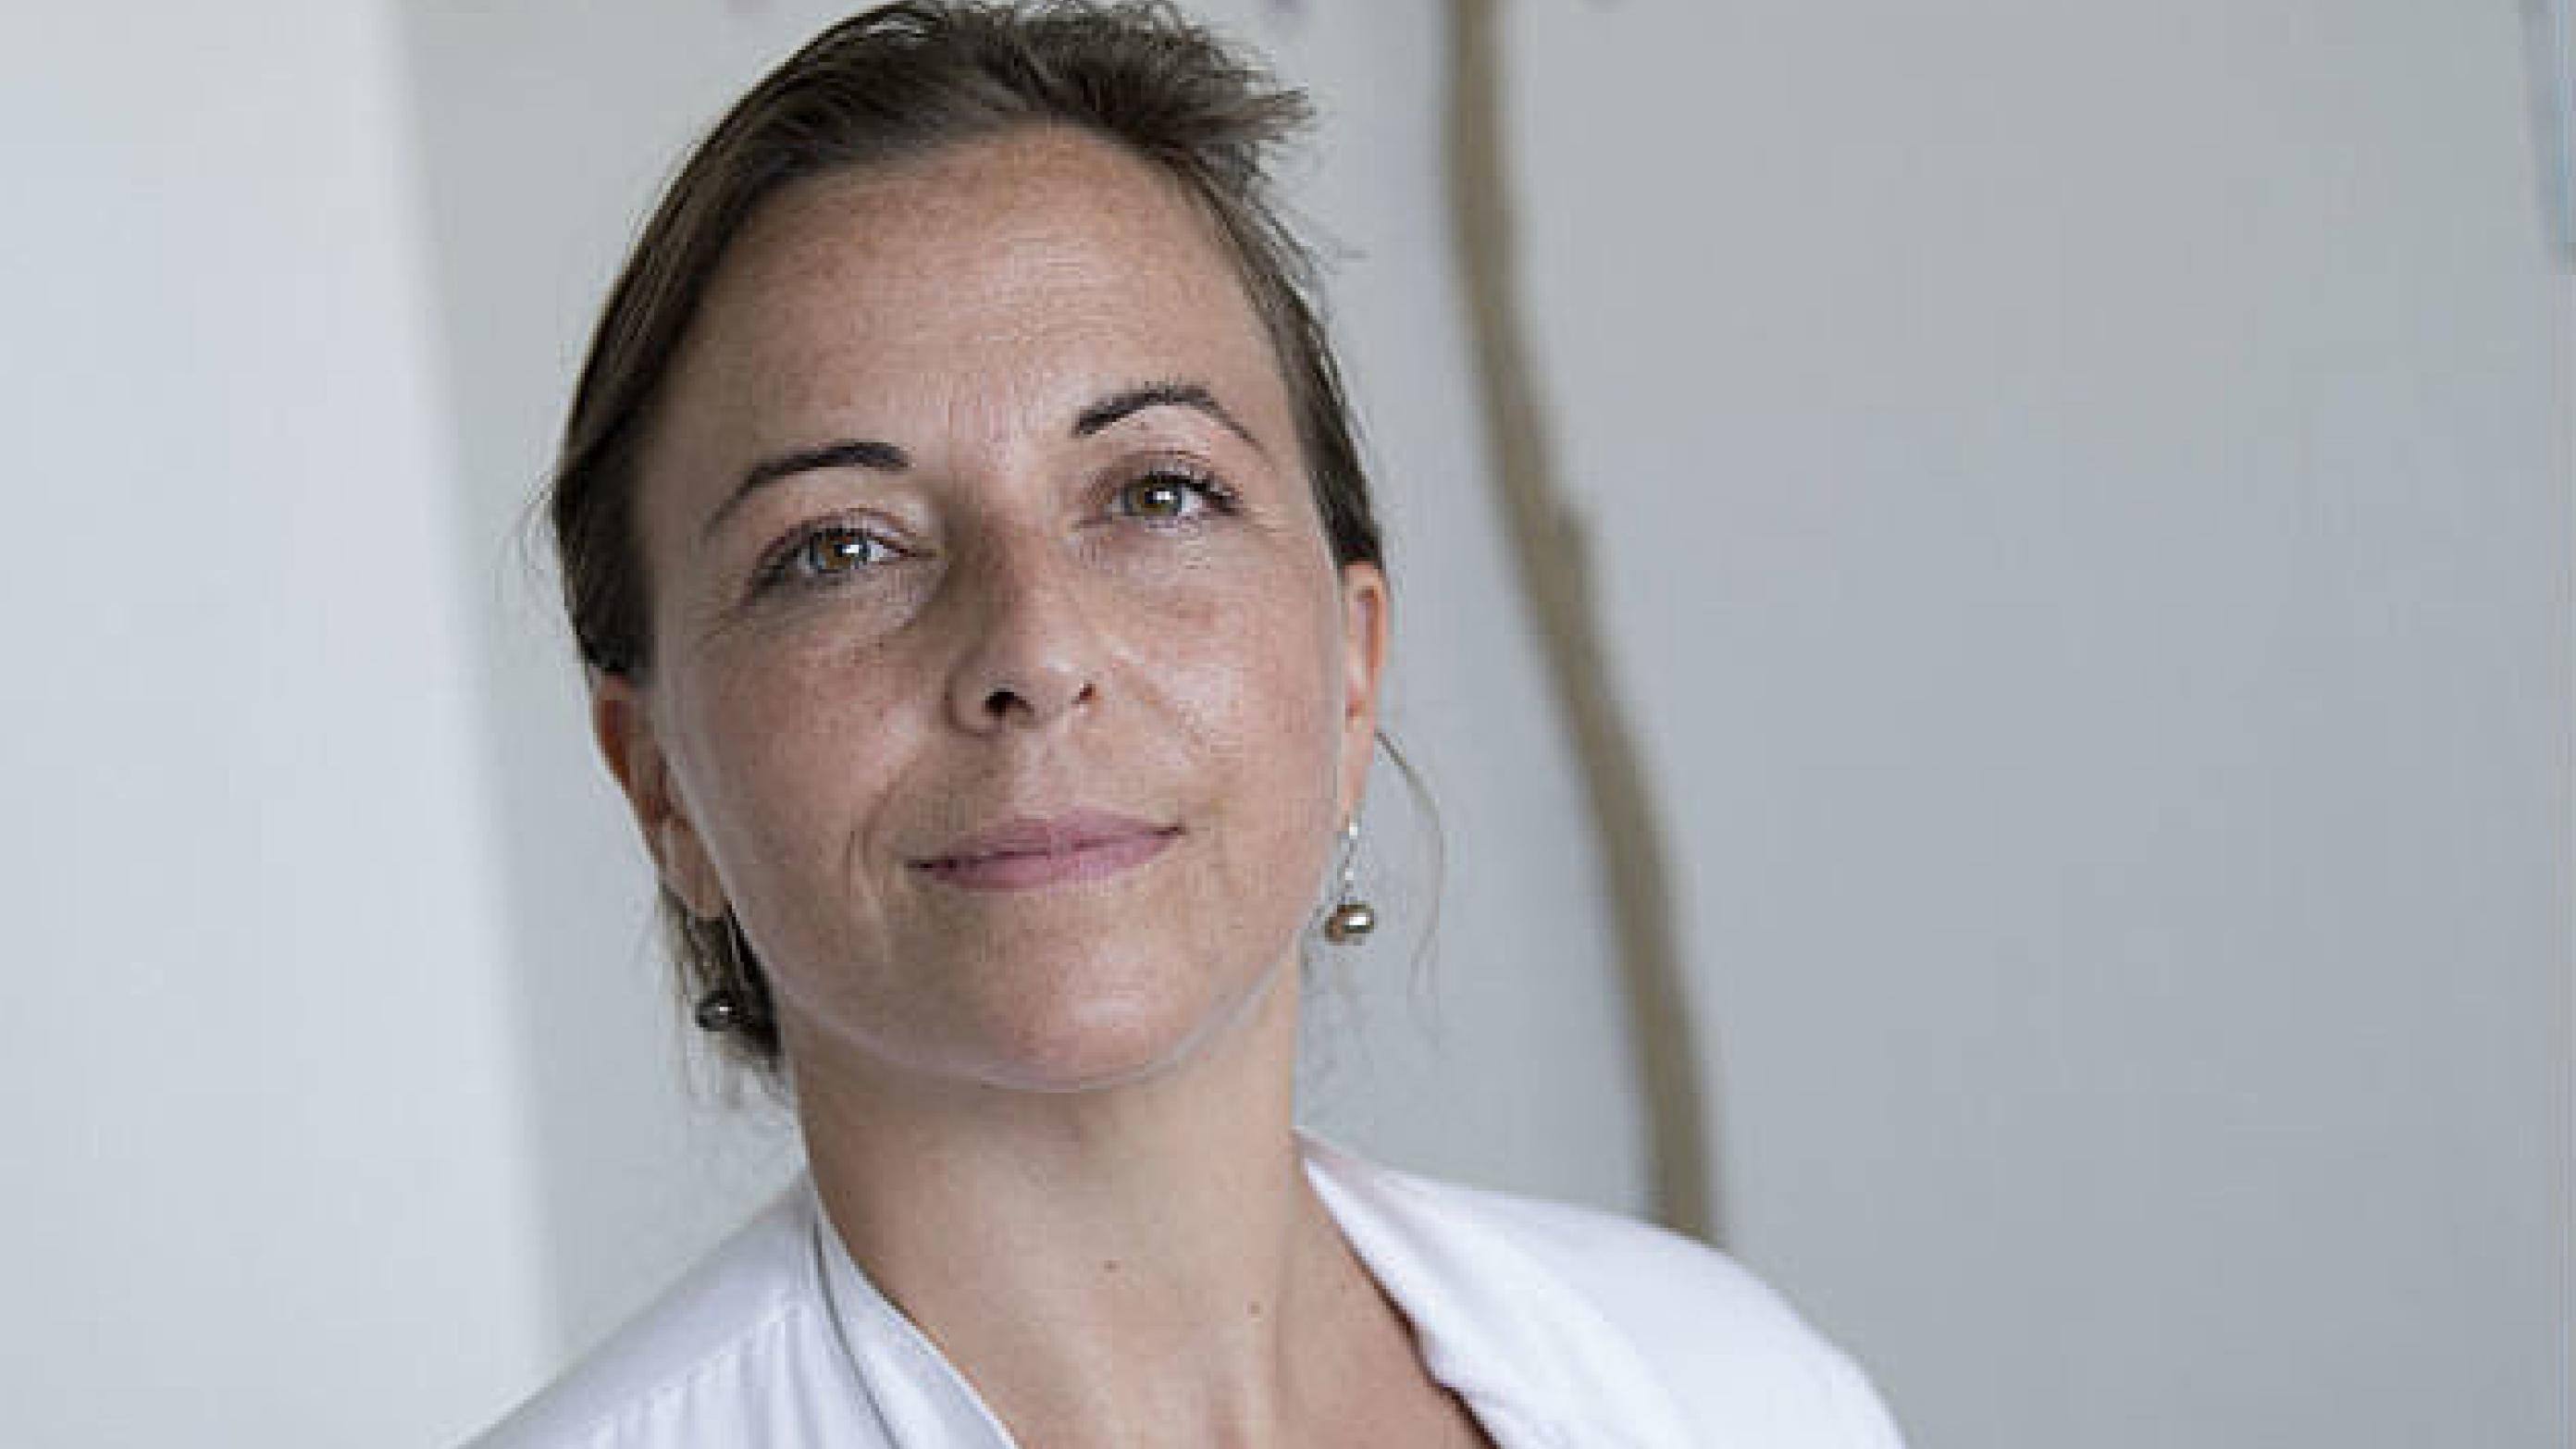 Helga Gulisano er ledende overlæge på Neurokirurgisk Afdeling, Aalborg Universitetshospital. Foto: Lars Horn/Baghuset.